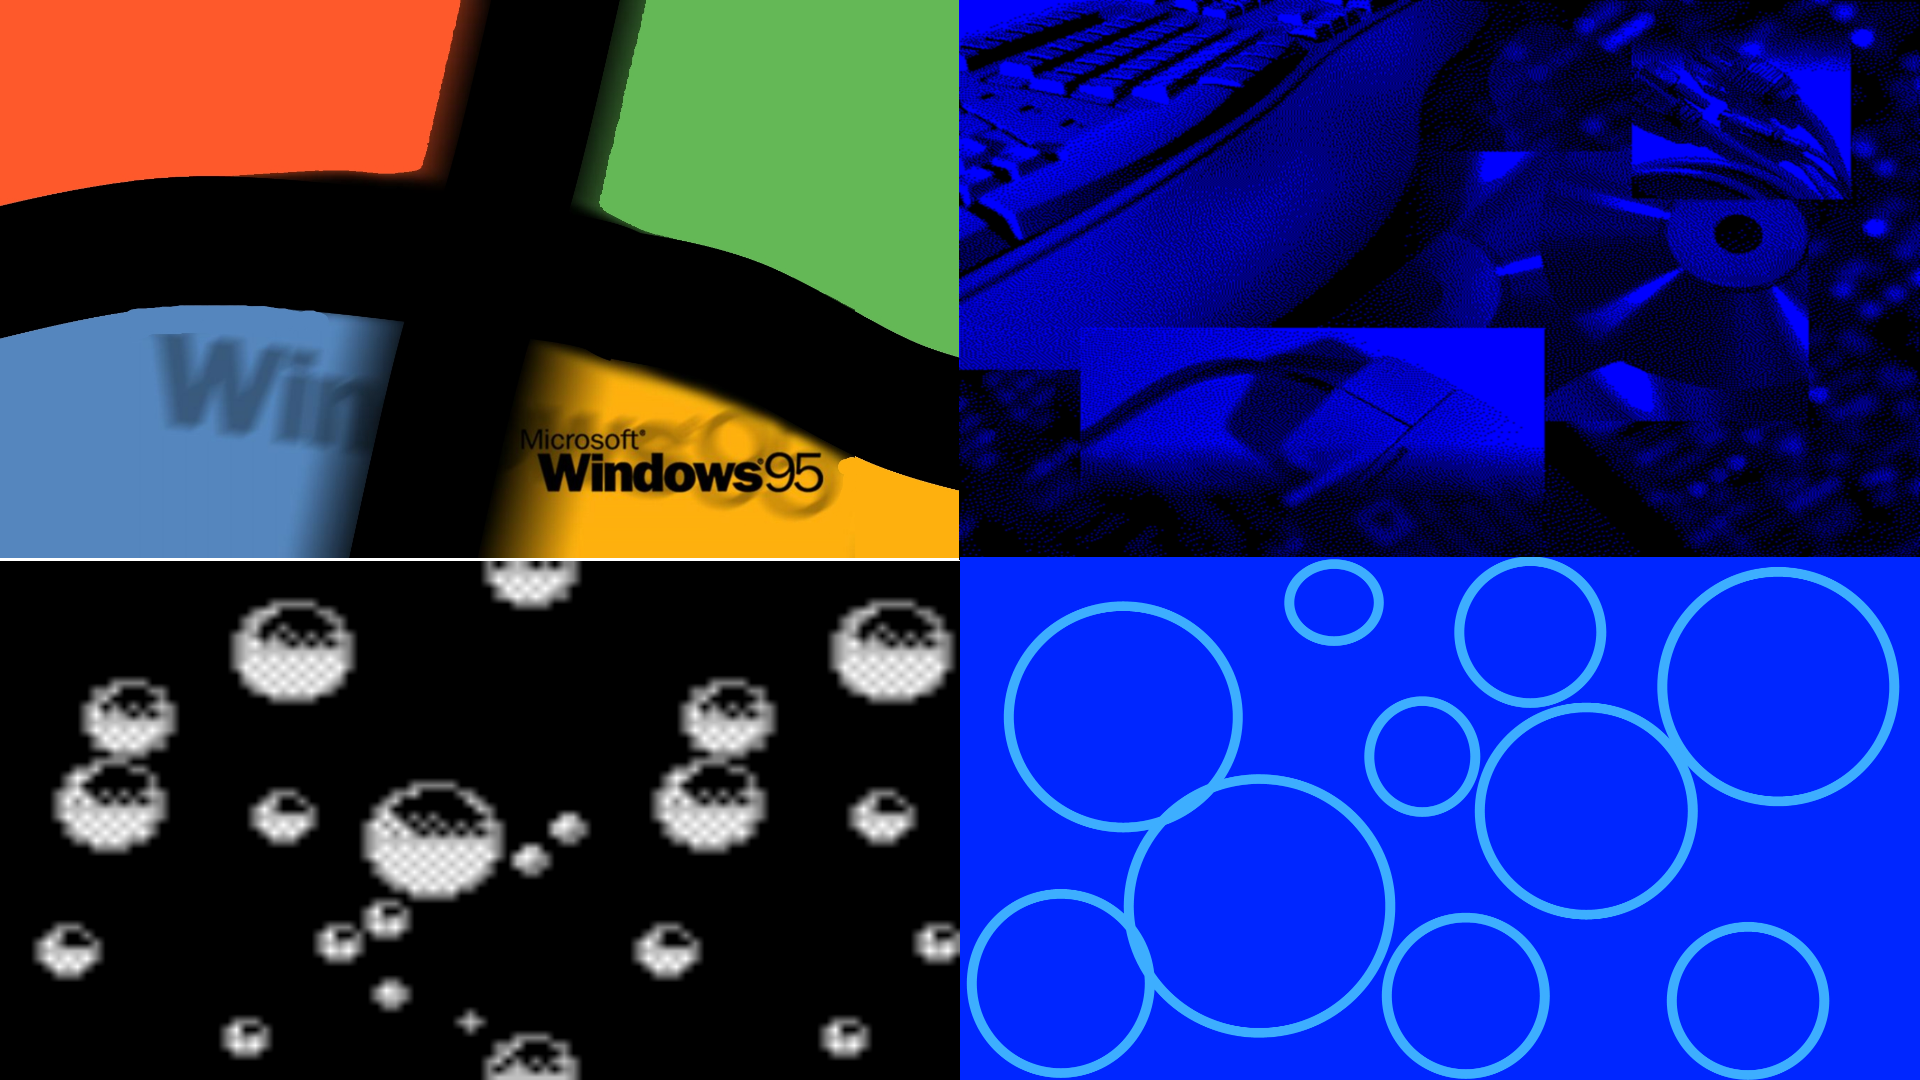 Windows 95 Wallpaper Pack By Krichouxtech On Deviantart